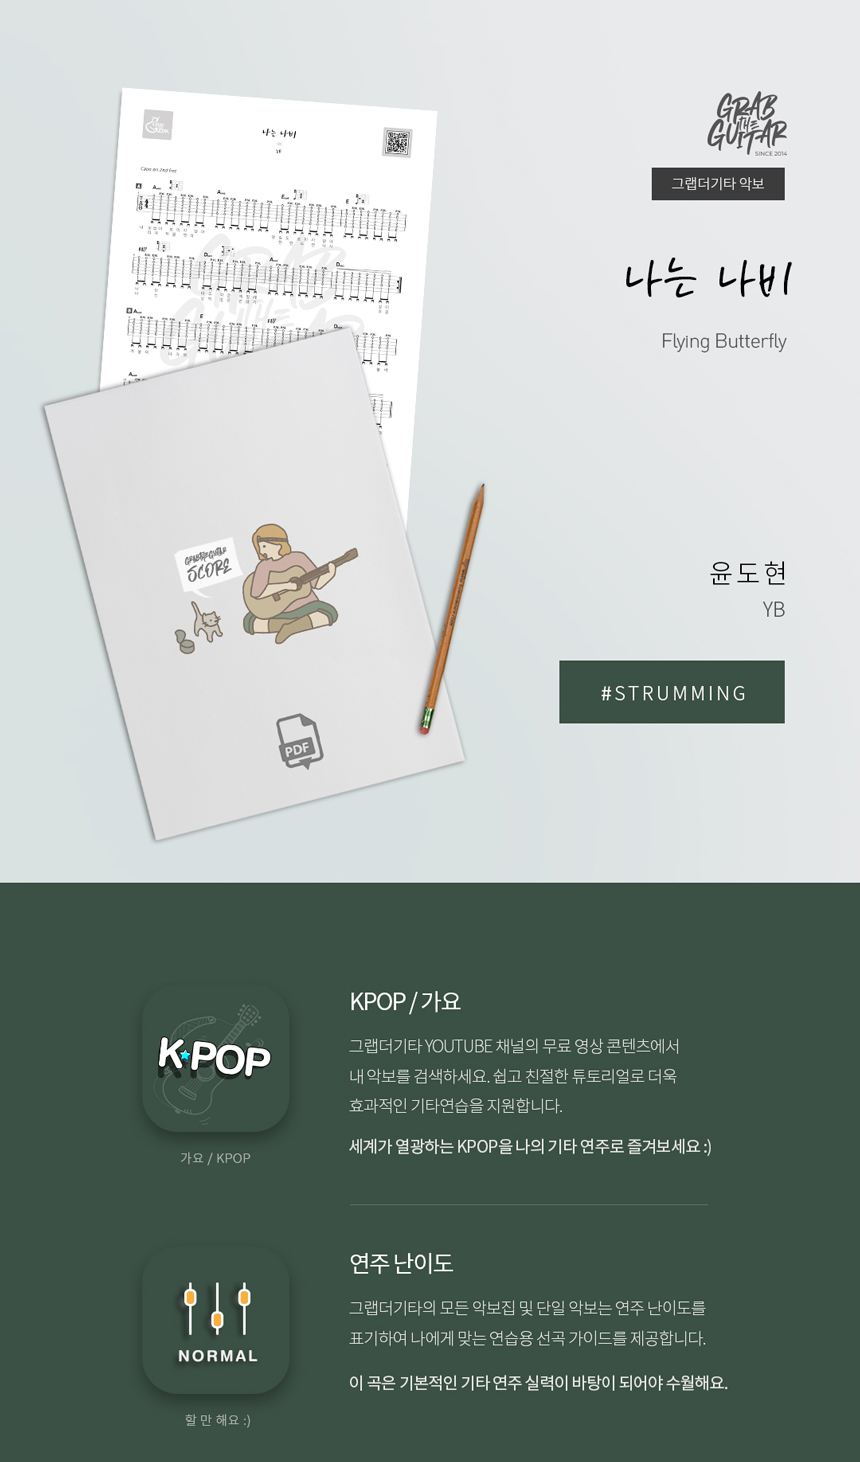 나는 나비 Flying Butterfly by 윤도현 YBkpop acoustic guitar sheet music tab pdf download